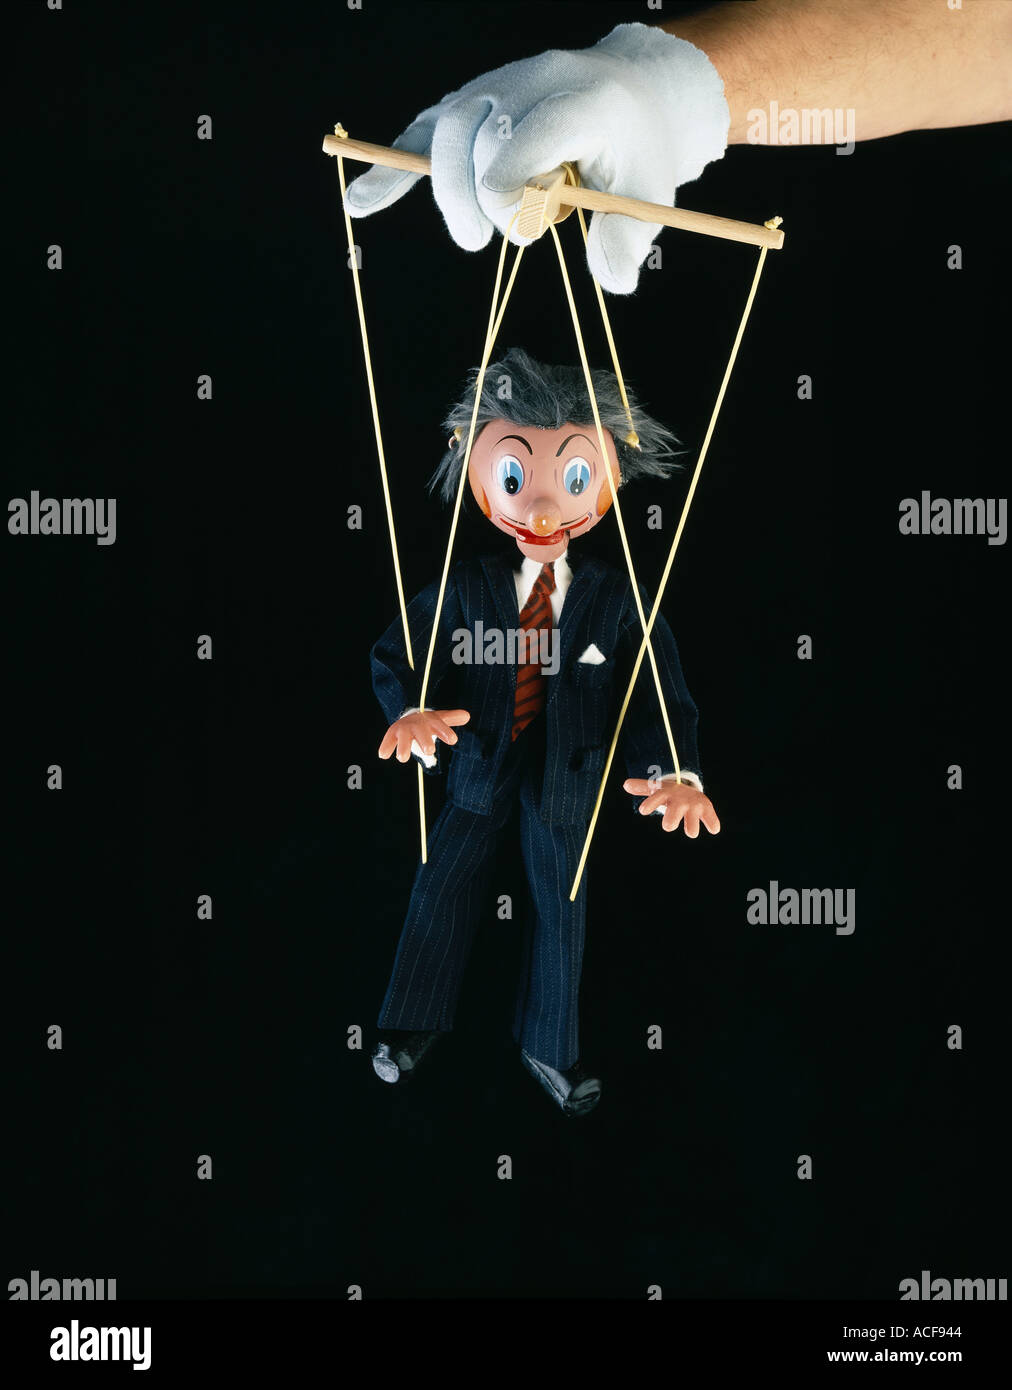 Businessman en costume puppet exploités par un marionnettiste Banque D'Images